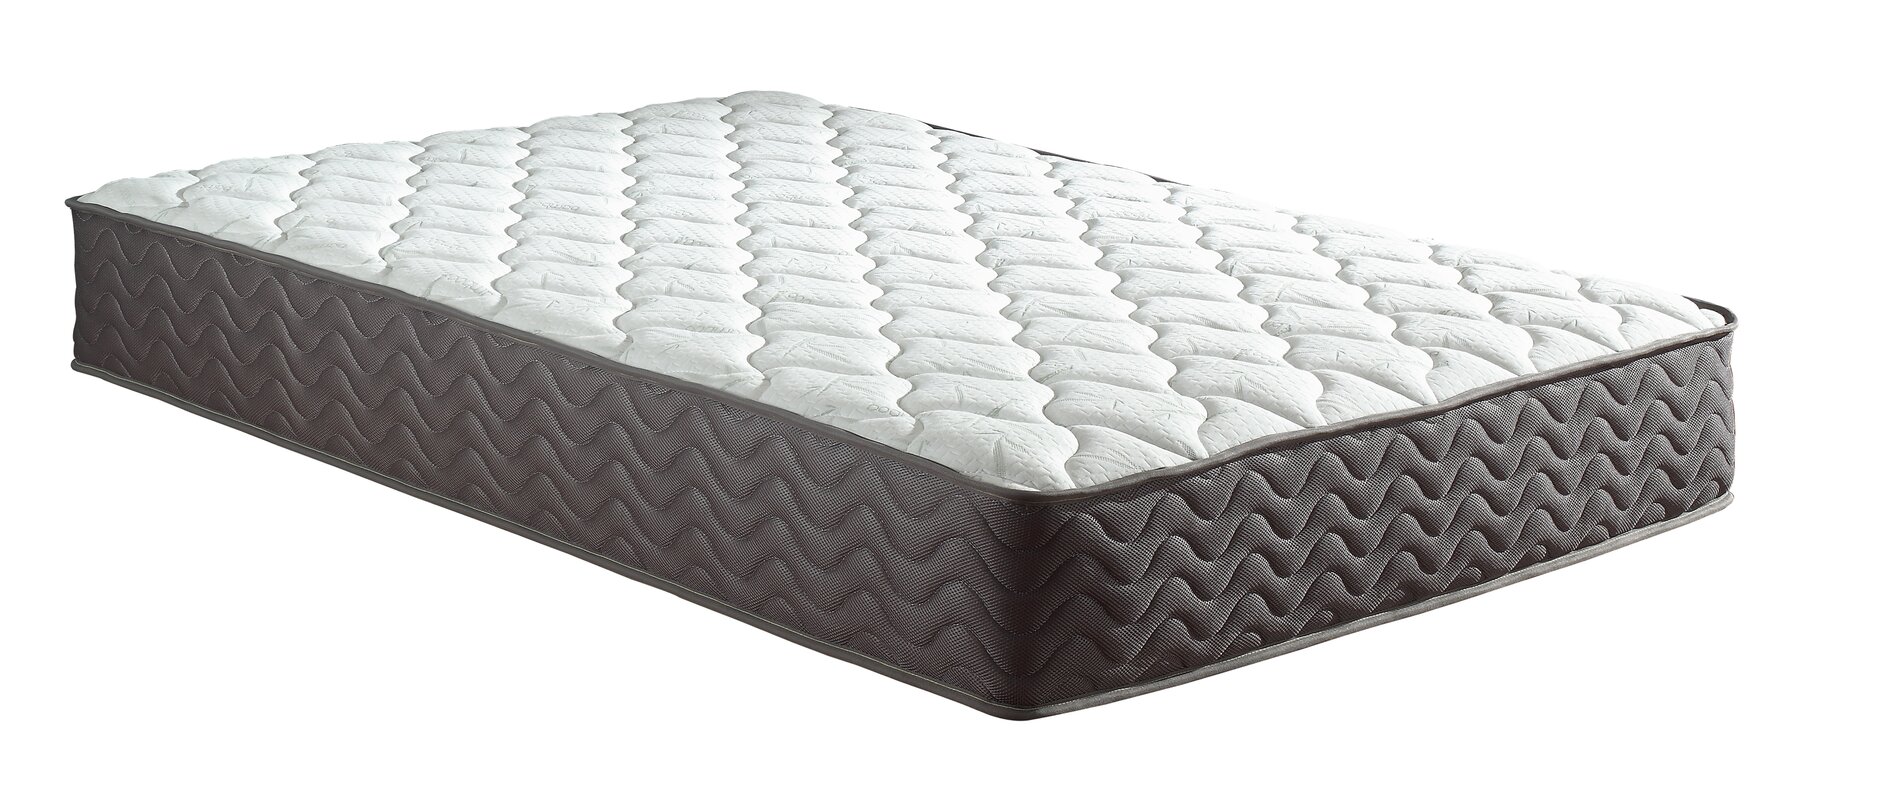 madison broadway mattress reviews